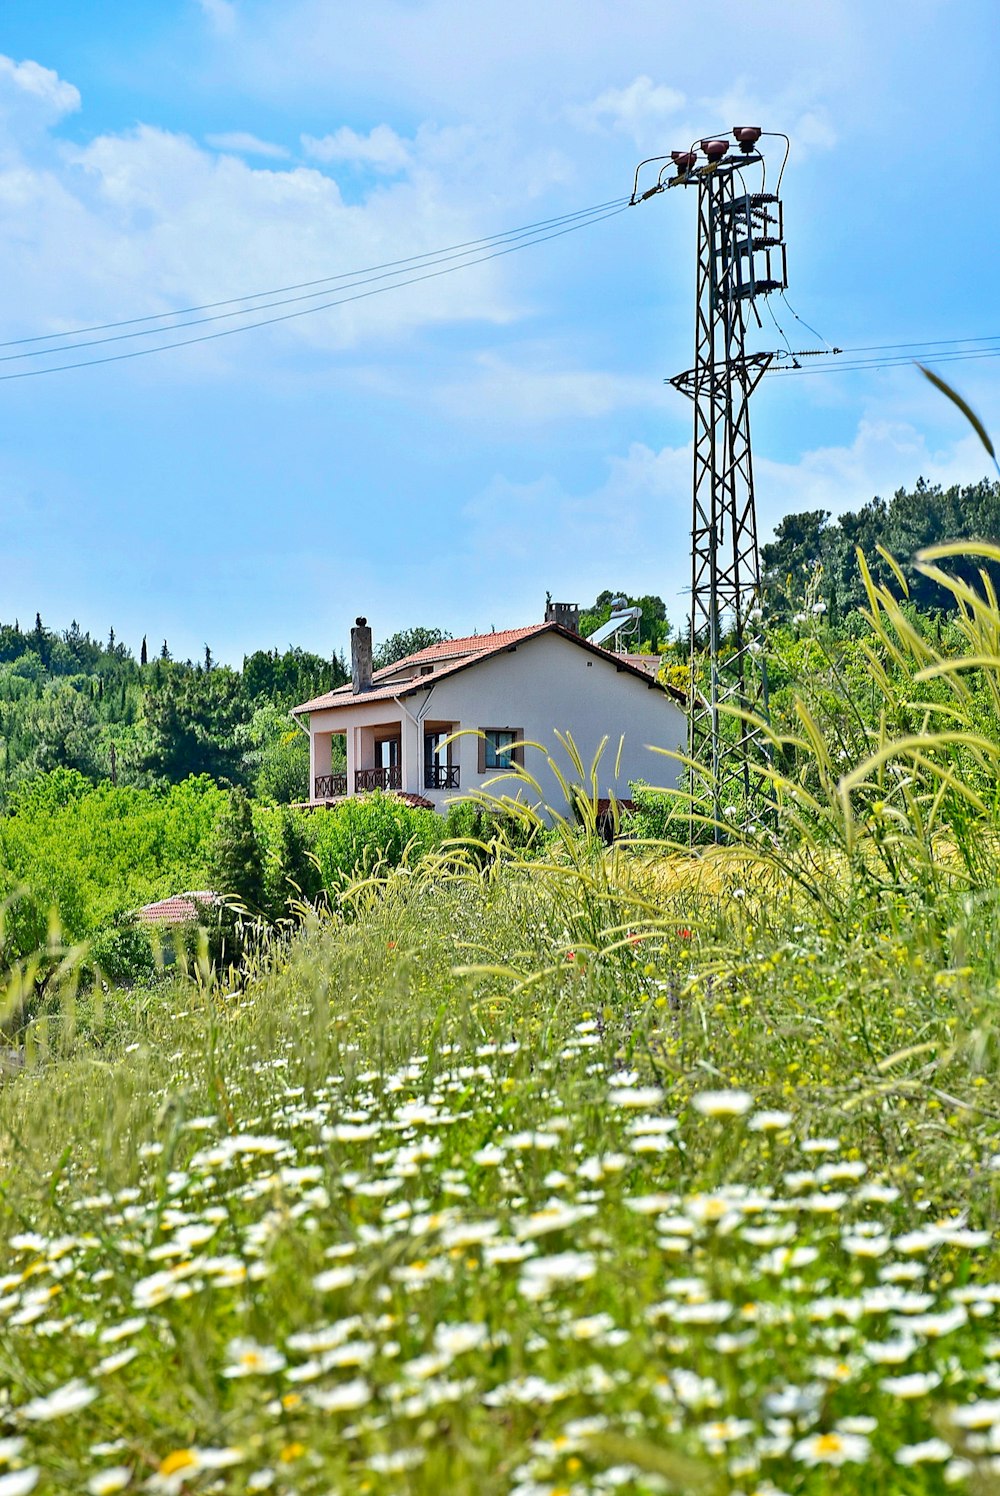 昼間の青空の下、緑の芝生のそばにある茶色の木造家屋